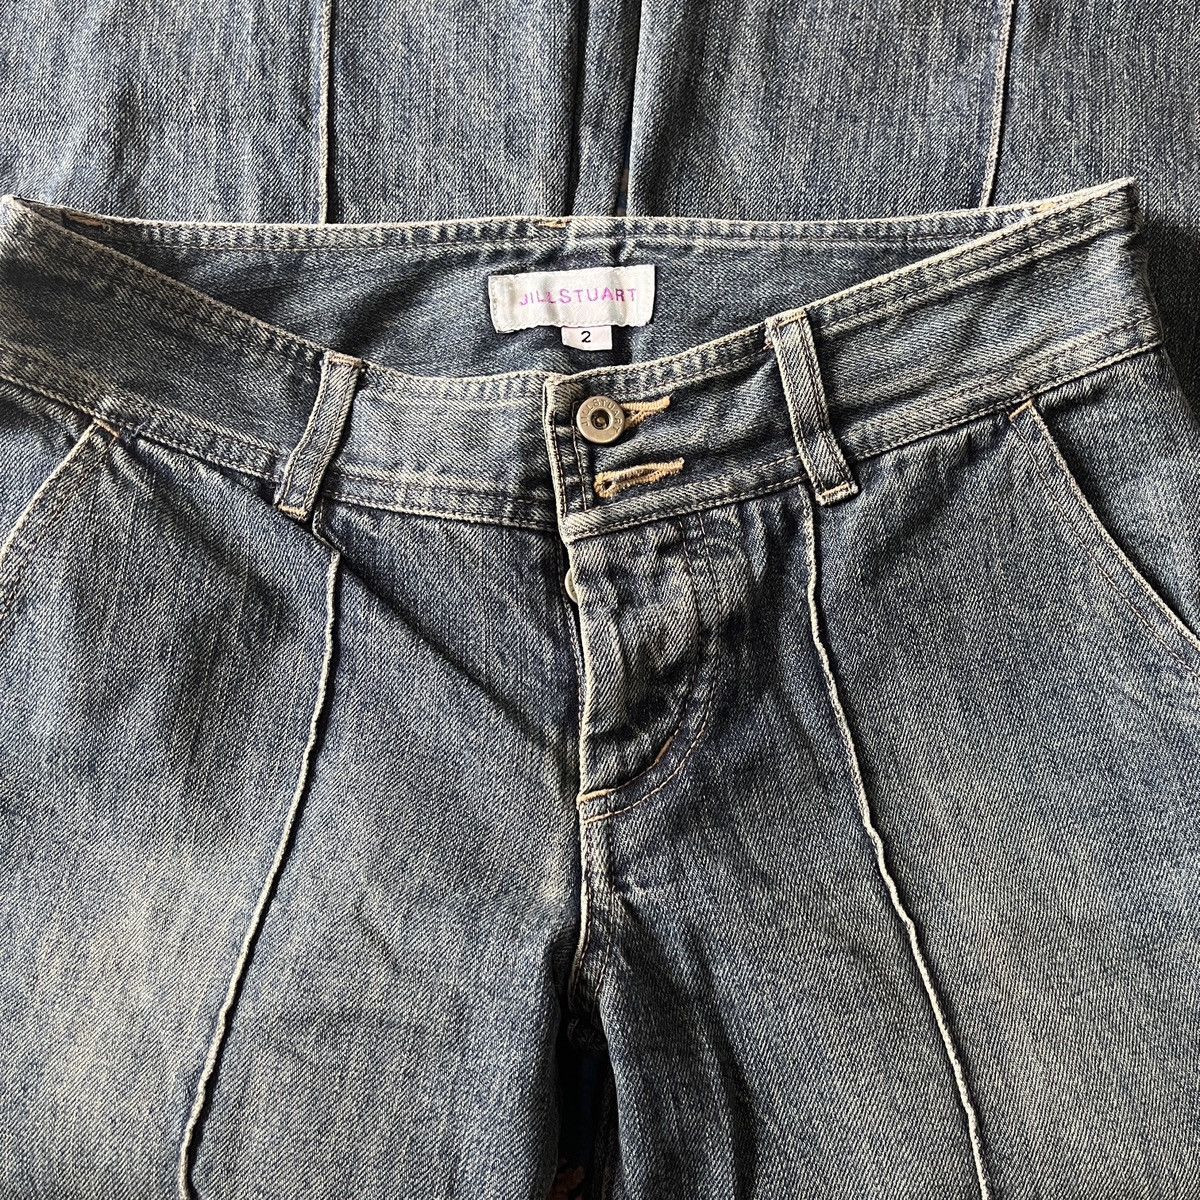 Jil Stuart - Jill Stuart Flare Boot Cut Classic Denim Jeans - 8